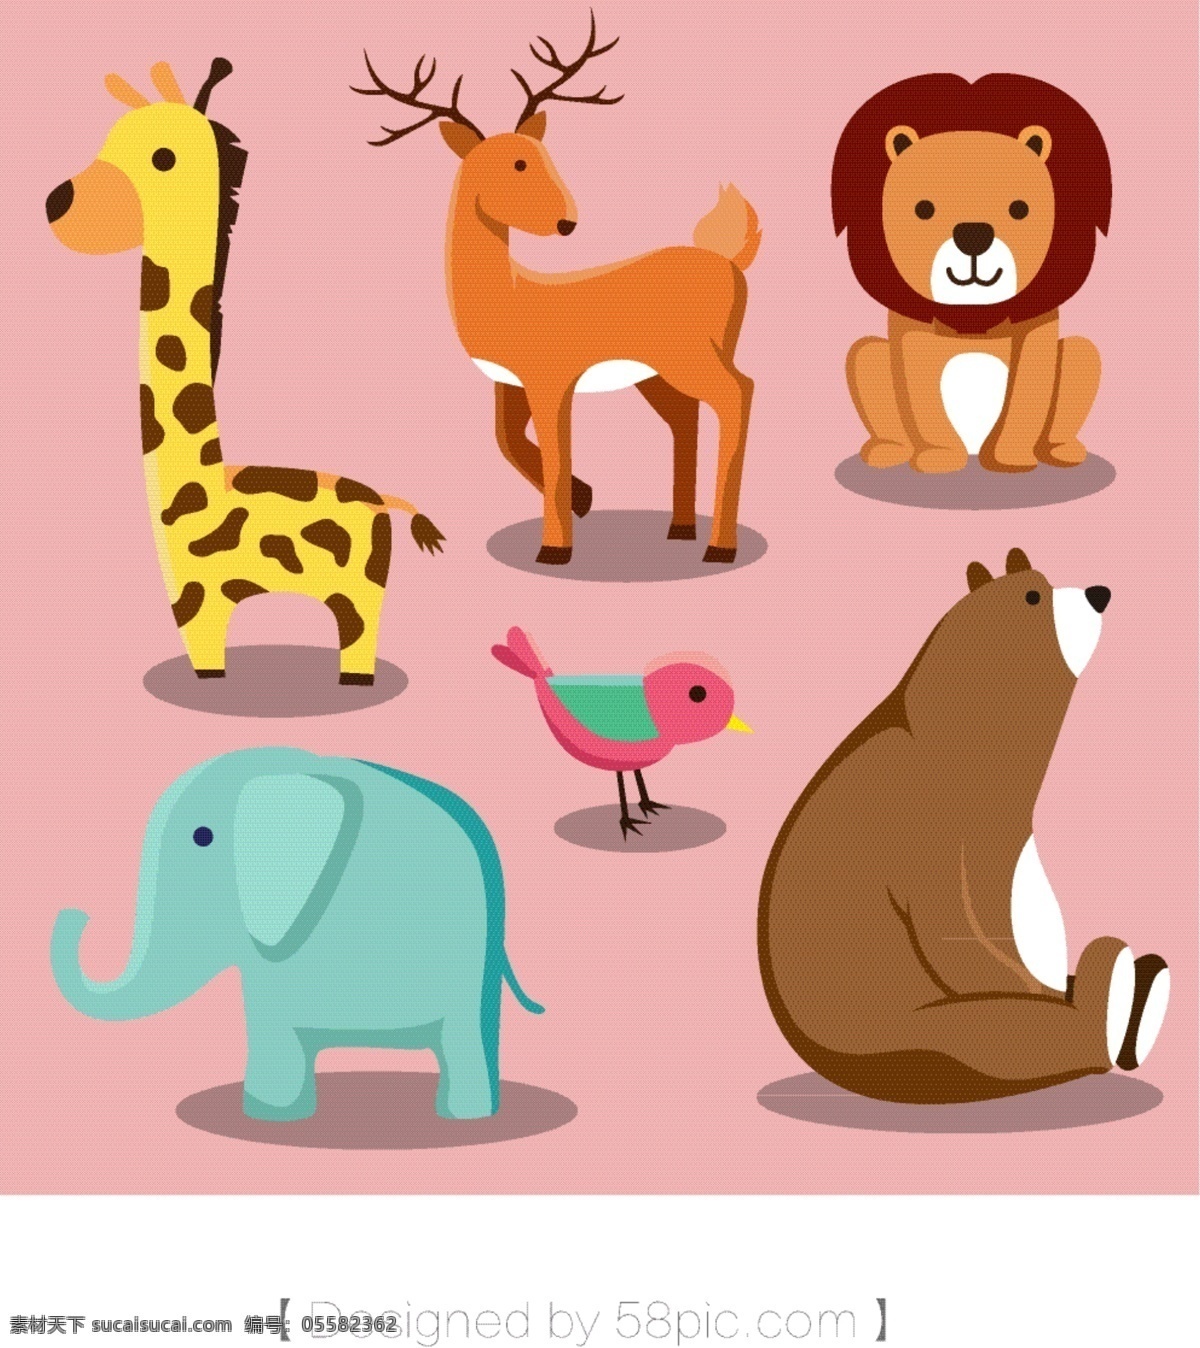 原创 可爱 卡通 动物 元素 卡通素材 矢量动物素材 卡通动物素材 狮子 长颈鹿 鹿 小鸟 大象 熊 大棕熊